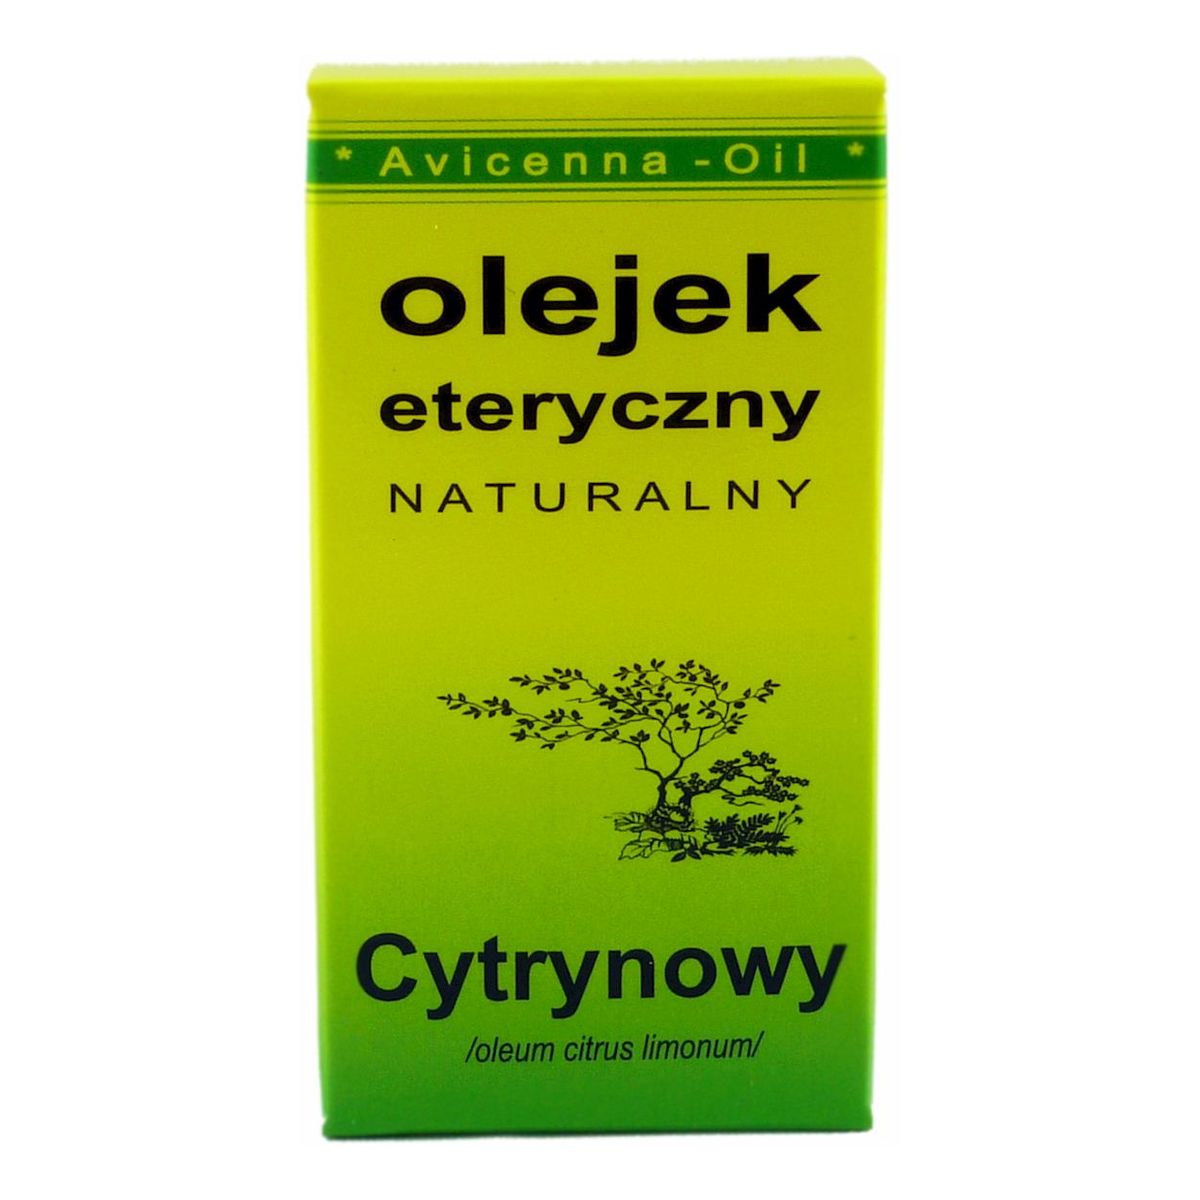 Avicenna-Oil Naturalny Olejek Eteryczny Cytrynowy 7ml